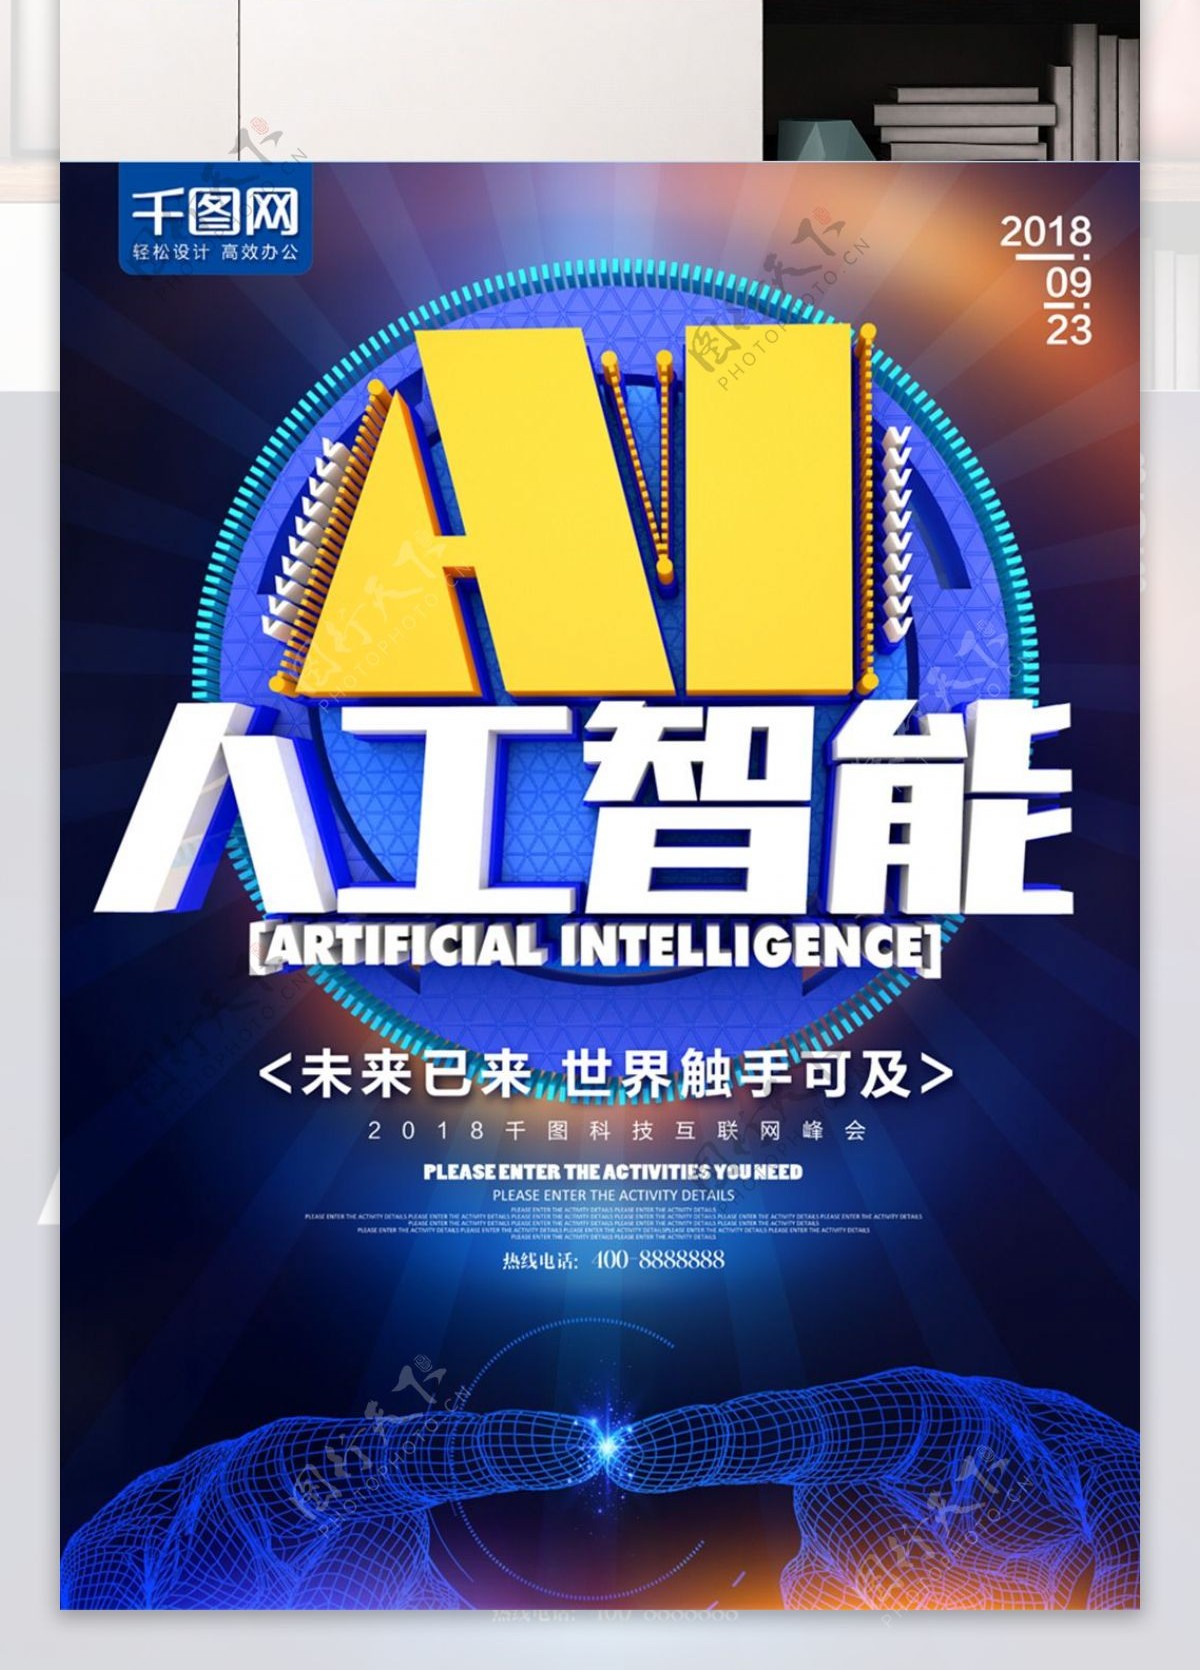 AI人工智能科技互联网海报